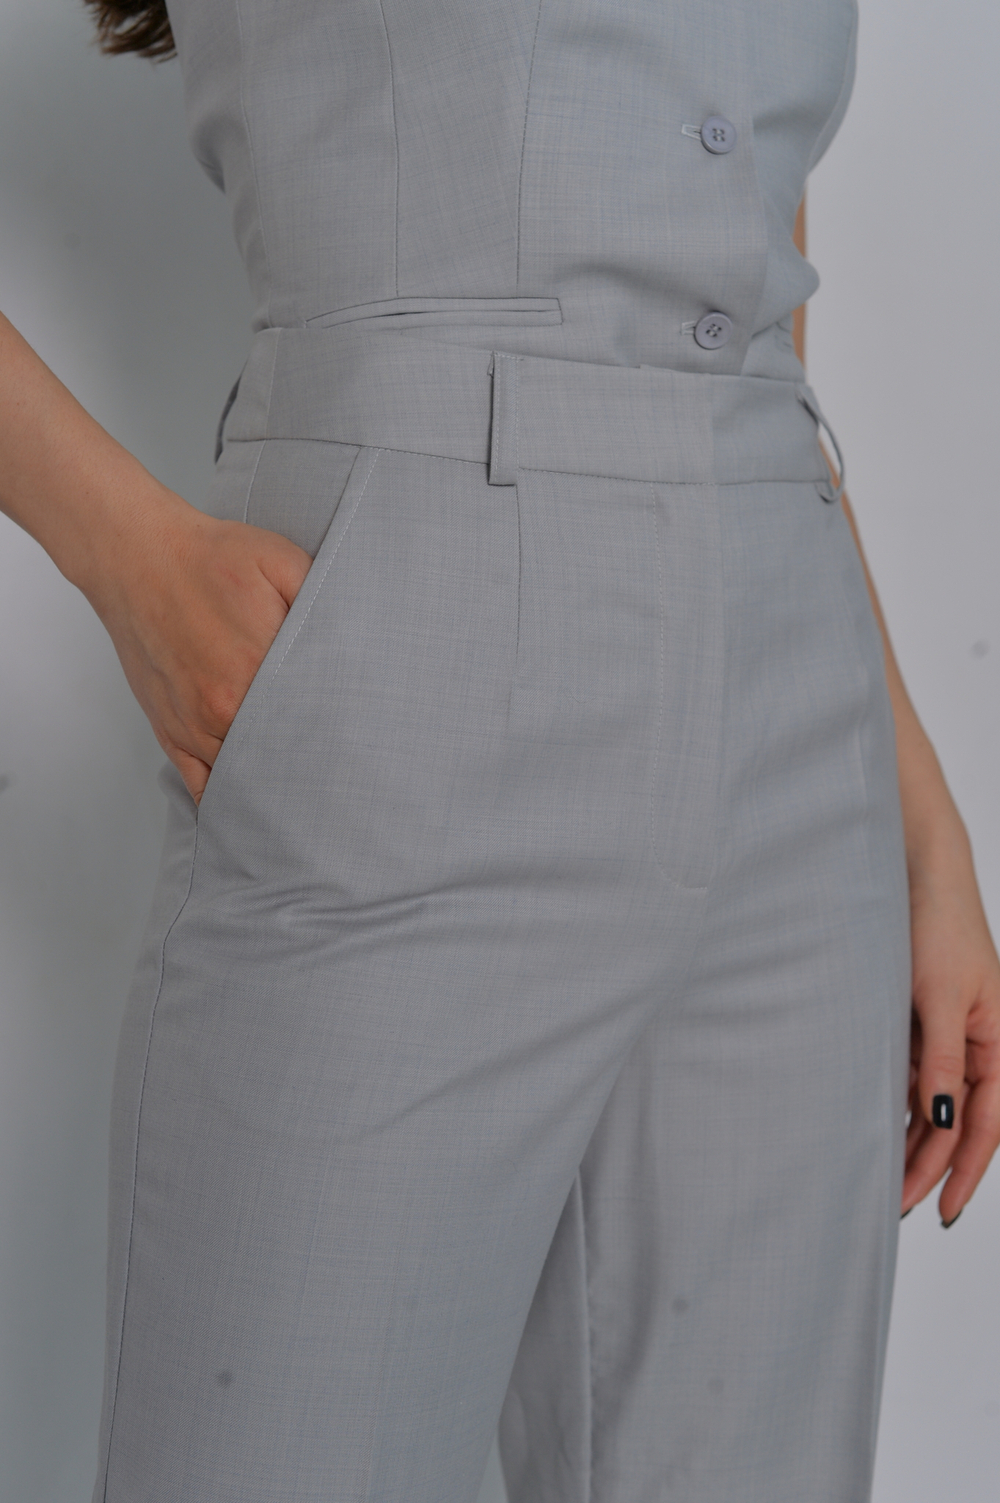 Женские брюки серые прямые из итальянской шерсти